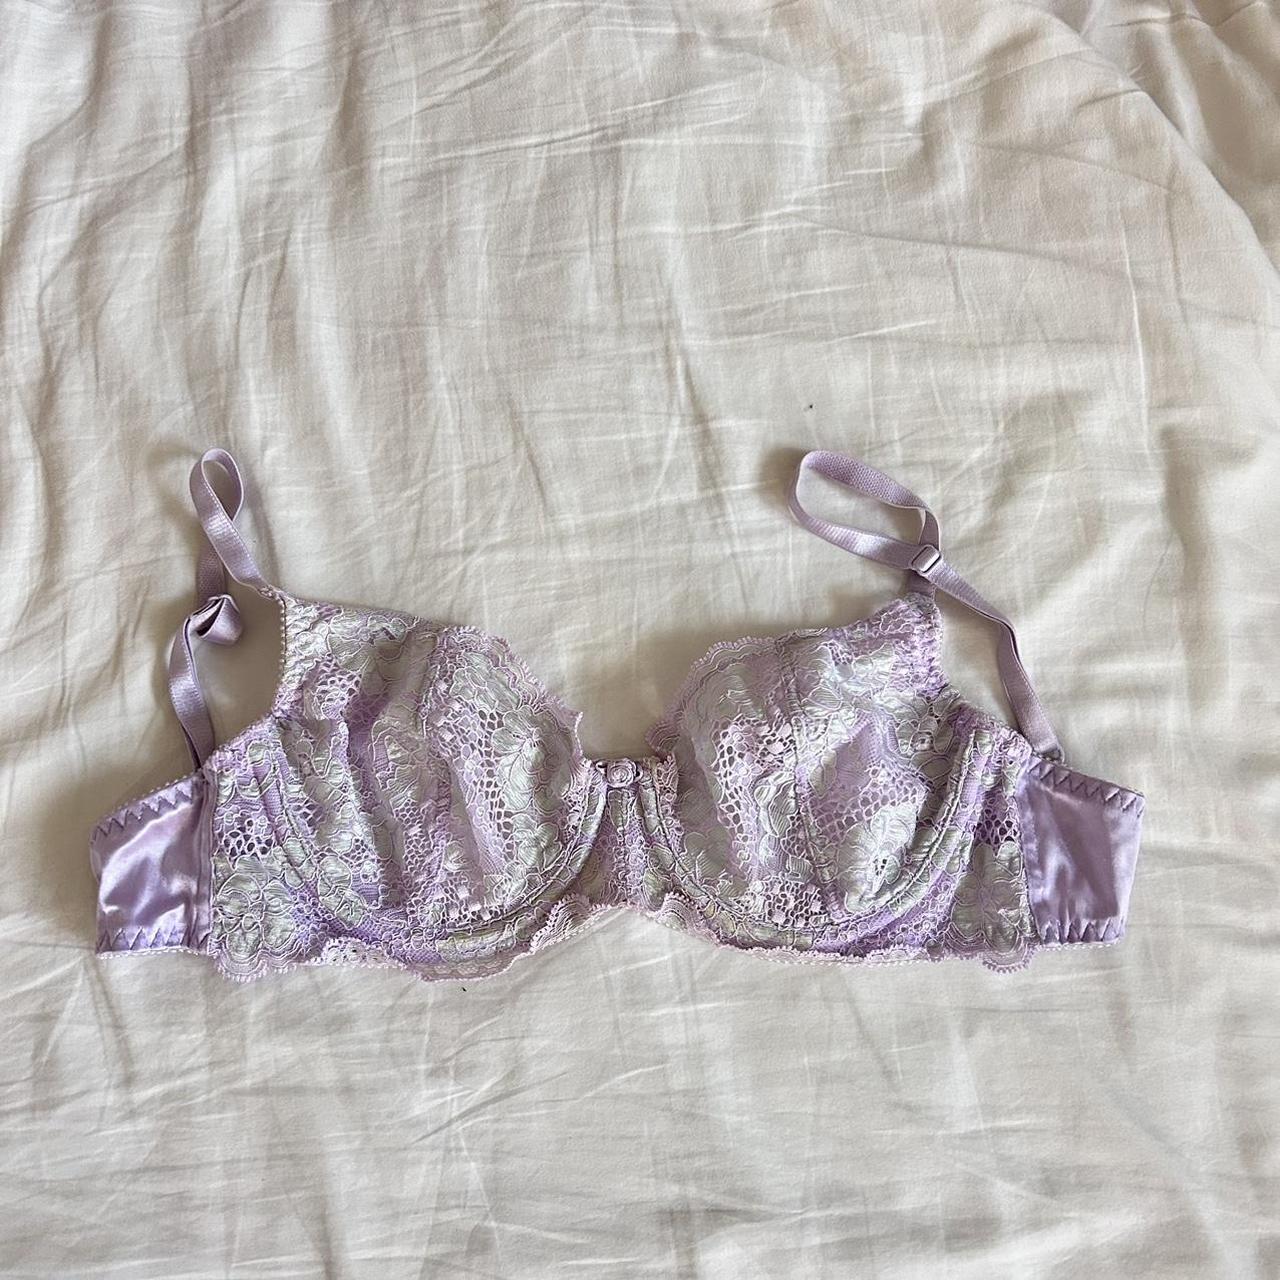 Victoria's Secret Women's Purple Nightwear | Depop